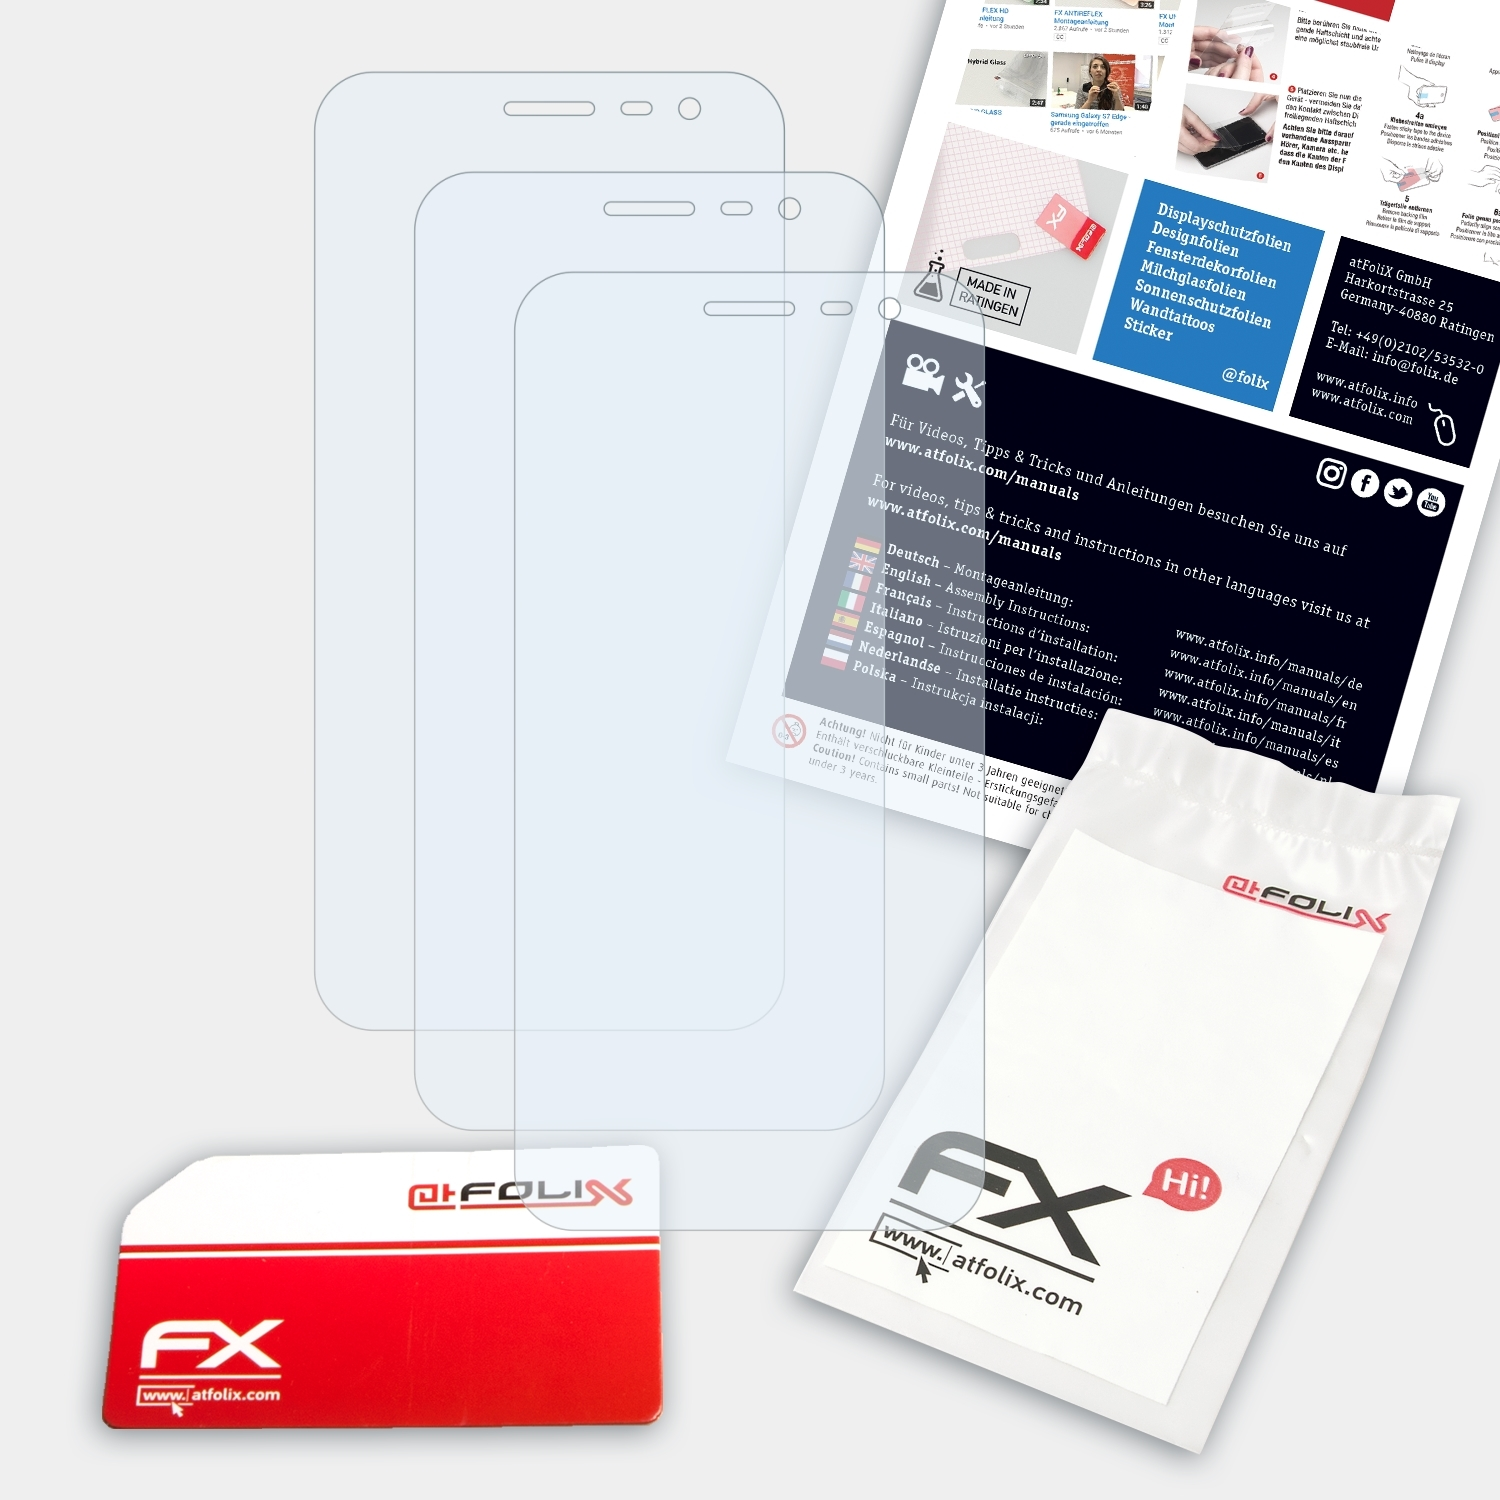 ATFOLIX 3x J2 Samsung Pure) Galaxy Displayschutz(für FX-Clear